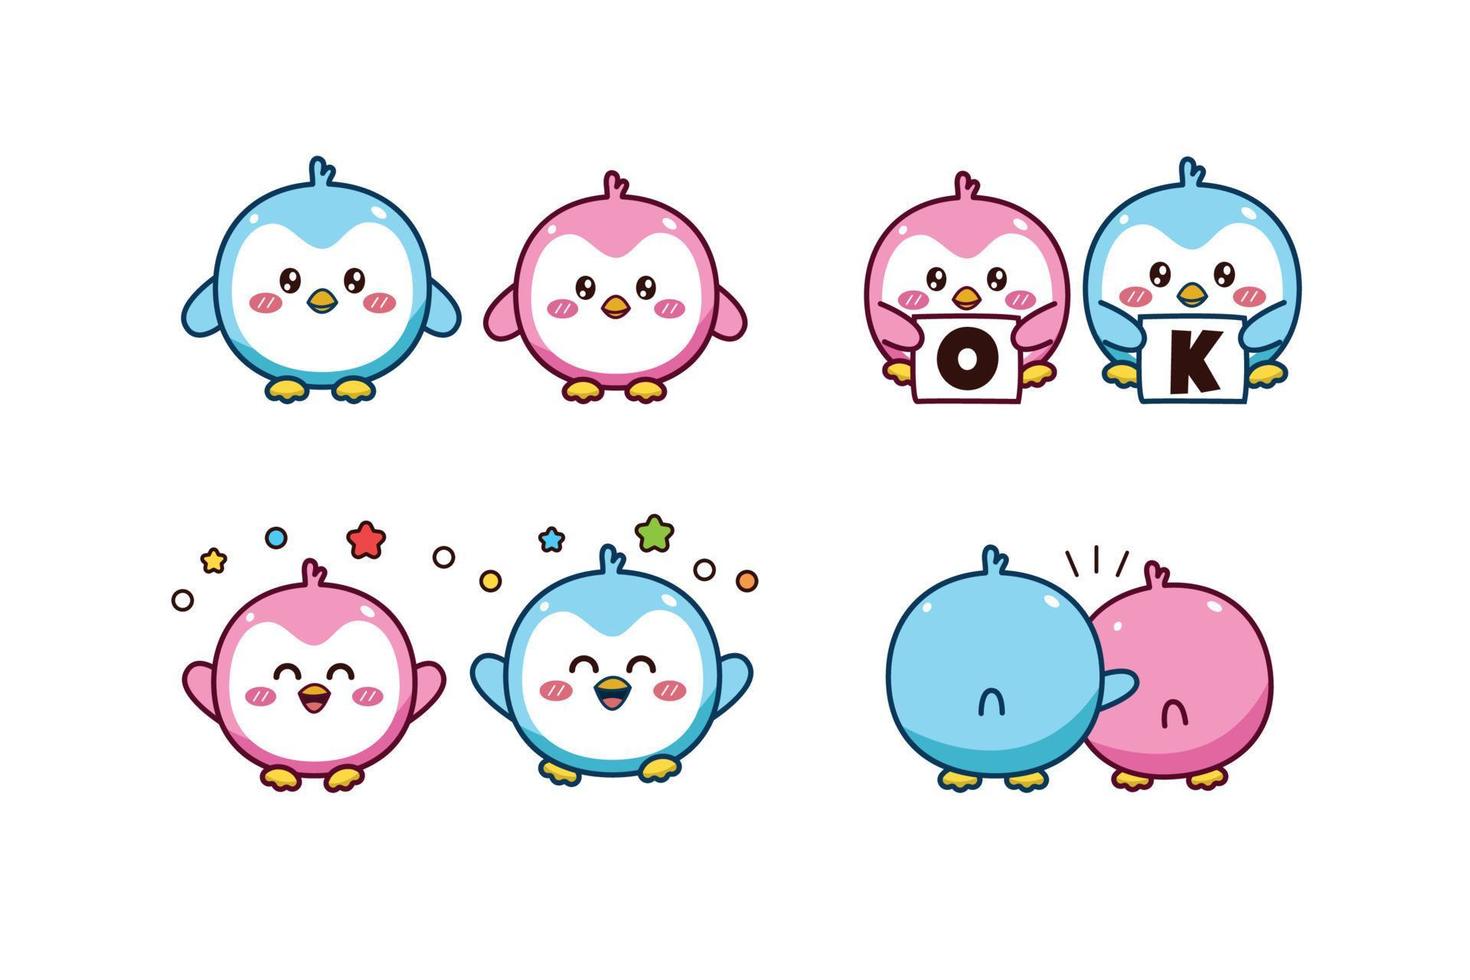 impostato di carino kawaii coppia blu e rosa poco pinguino per sociale media etichetta emoji dire ok contento e abbraccio emoticon vettore